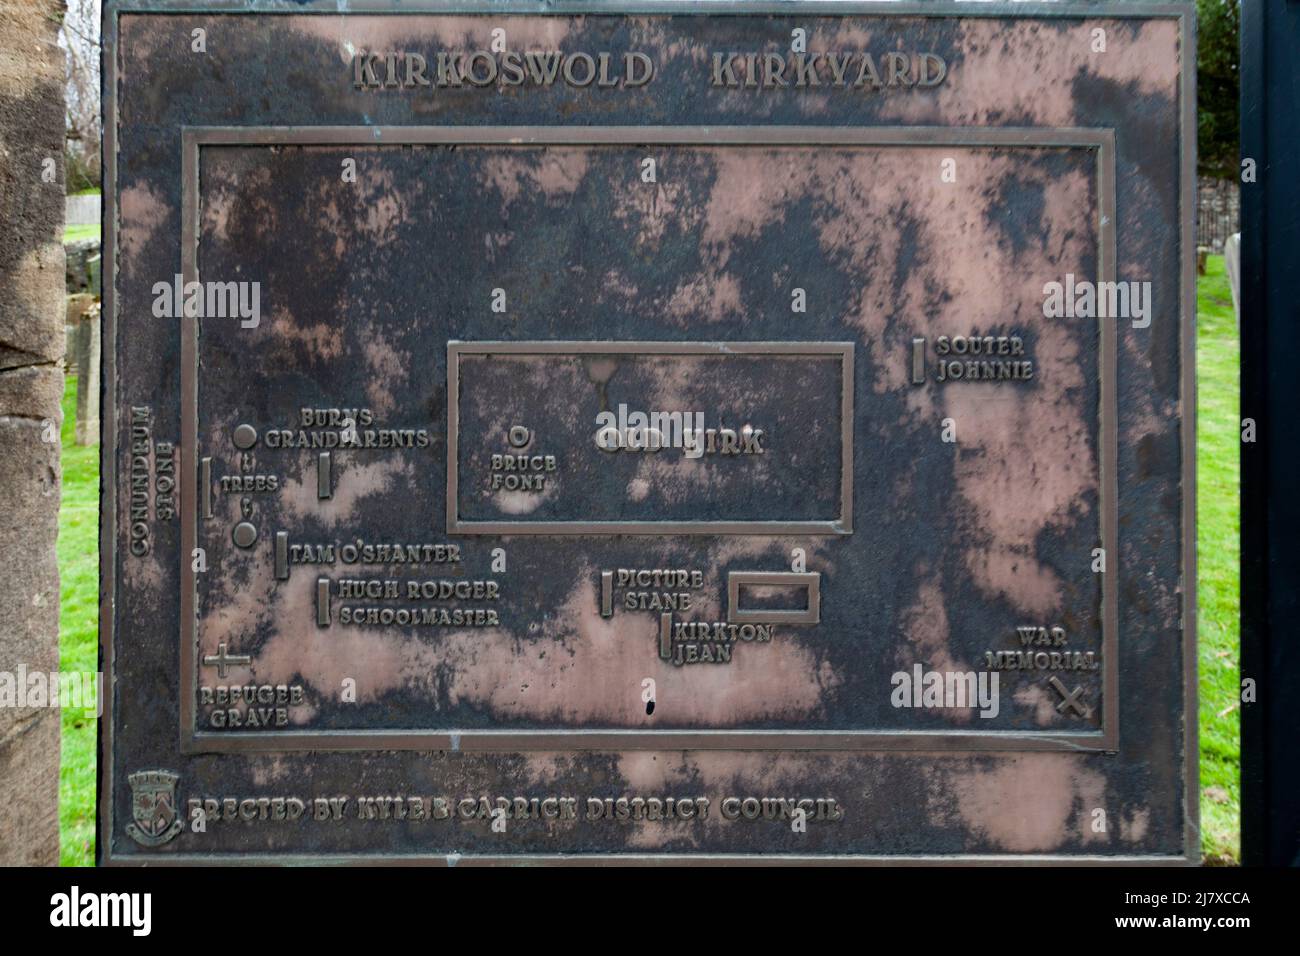 Kirkoswald, Ayrshire, Scotlamd, Großbritannien: Eine Tafel, die die Grabstätten berühmter Persönlichkeiten zeigt, die im Robert Burns Gedicht Tam 0'Shanter verewigt wurden Stockfoto